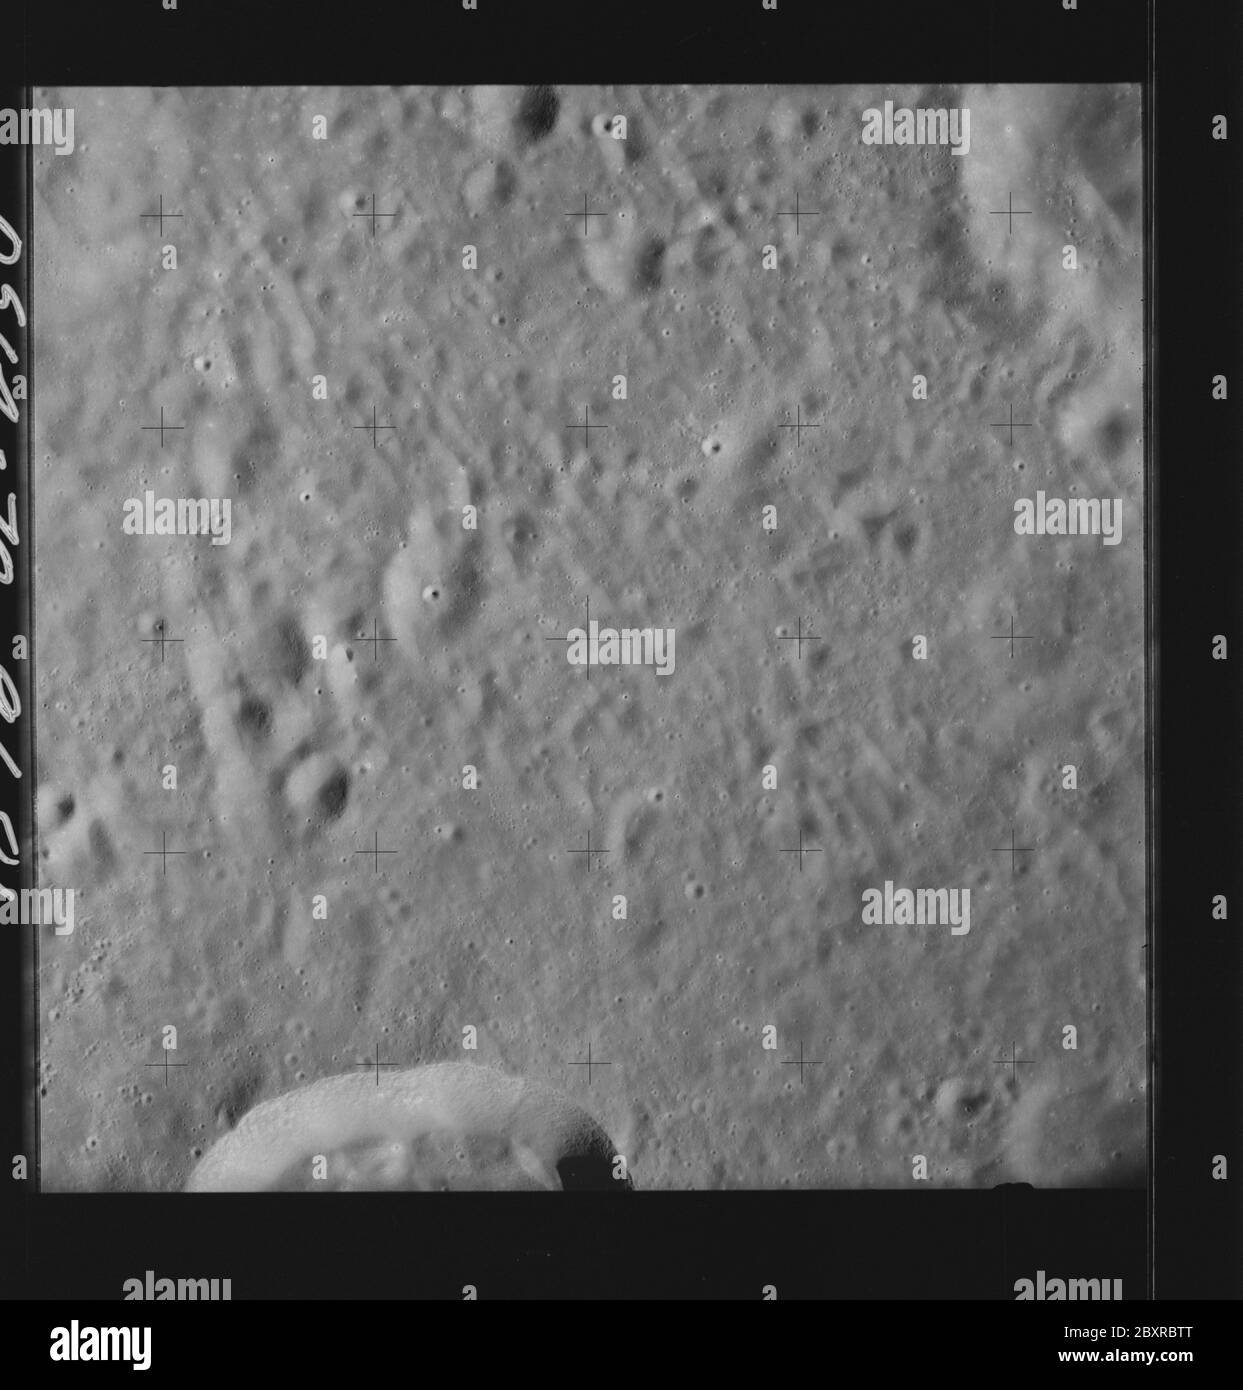 AS14-70-9681 - Apollo 14 - immagine della missione Apollo 14 - Vista della superficie lunare a sud del cratere del Vesalius e a nord del cratere del Meitner; portata e contenuto: Il database originale descrive questo come: Descrizione: Vista della superficie lunare a sud del cratere Vesalius e a nord del cratere Meitner. Sono state scattate immagini sulla Rivoluzione 26 della missione Apollo 14. Il caricatore di pellicola originale era etichettato Q, il tipo di pellicola era 3400BW (Panatomic-X, Nero e Bianco), lente da 80 mm con un'elevazione del sole di 26 gradi. La scala approssimativa della foto è 1:1,380,000. La latitudine del punto principale era 7.0S per Longitudine 114.0E, con Foto Stock